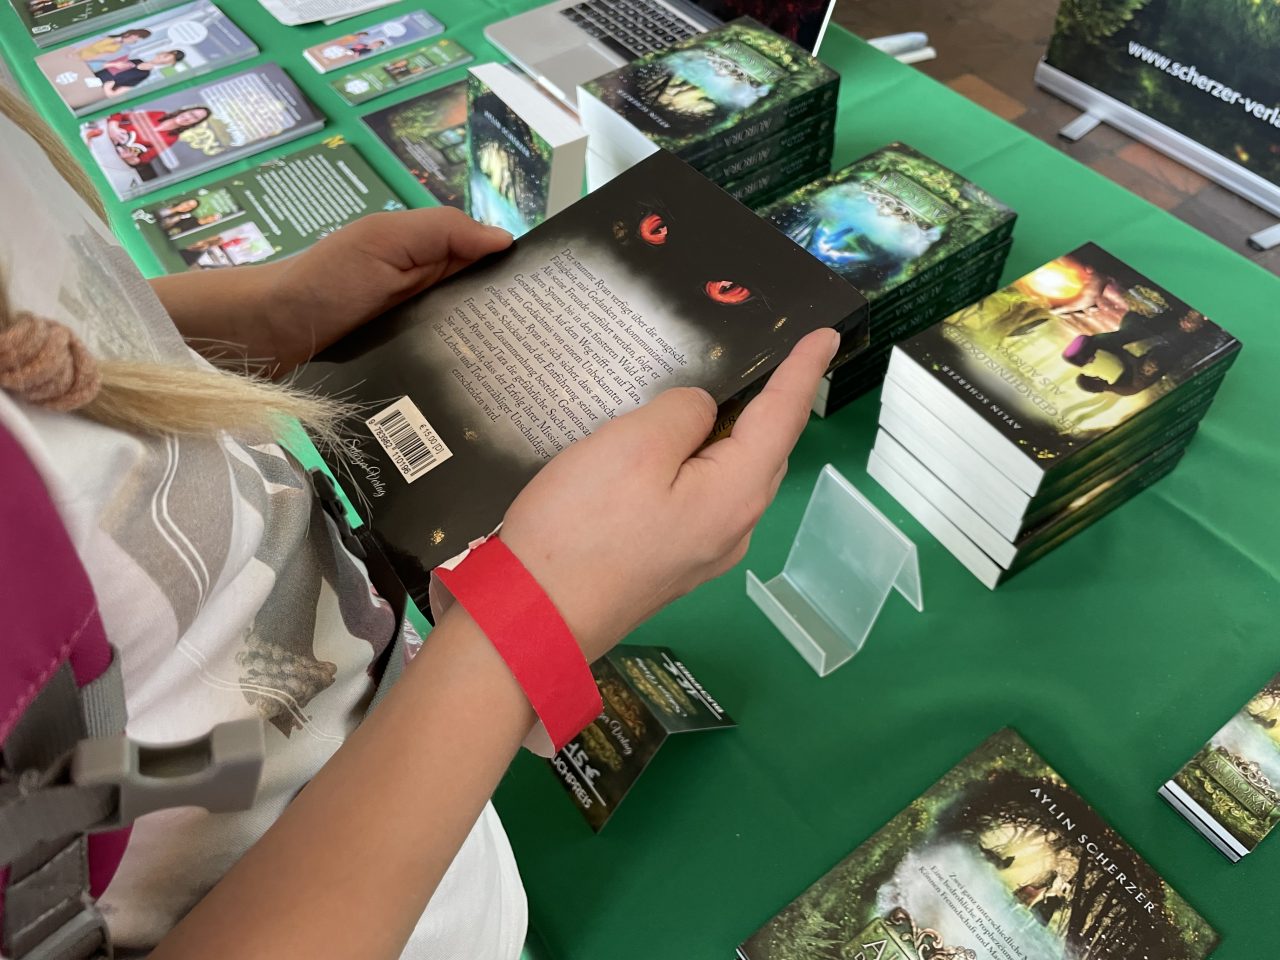 Bücher auf einem Tisch mit grüner Decke präsentierte Bücher und ein Kind hält eines in den Händen